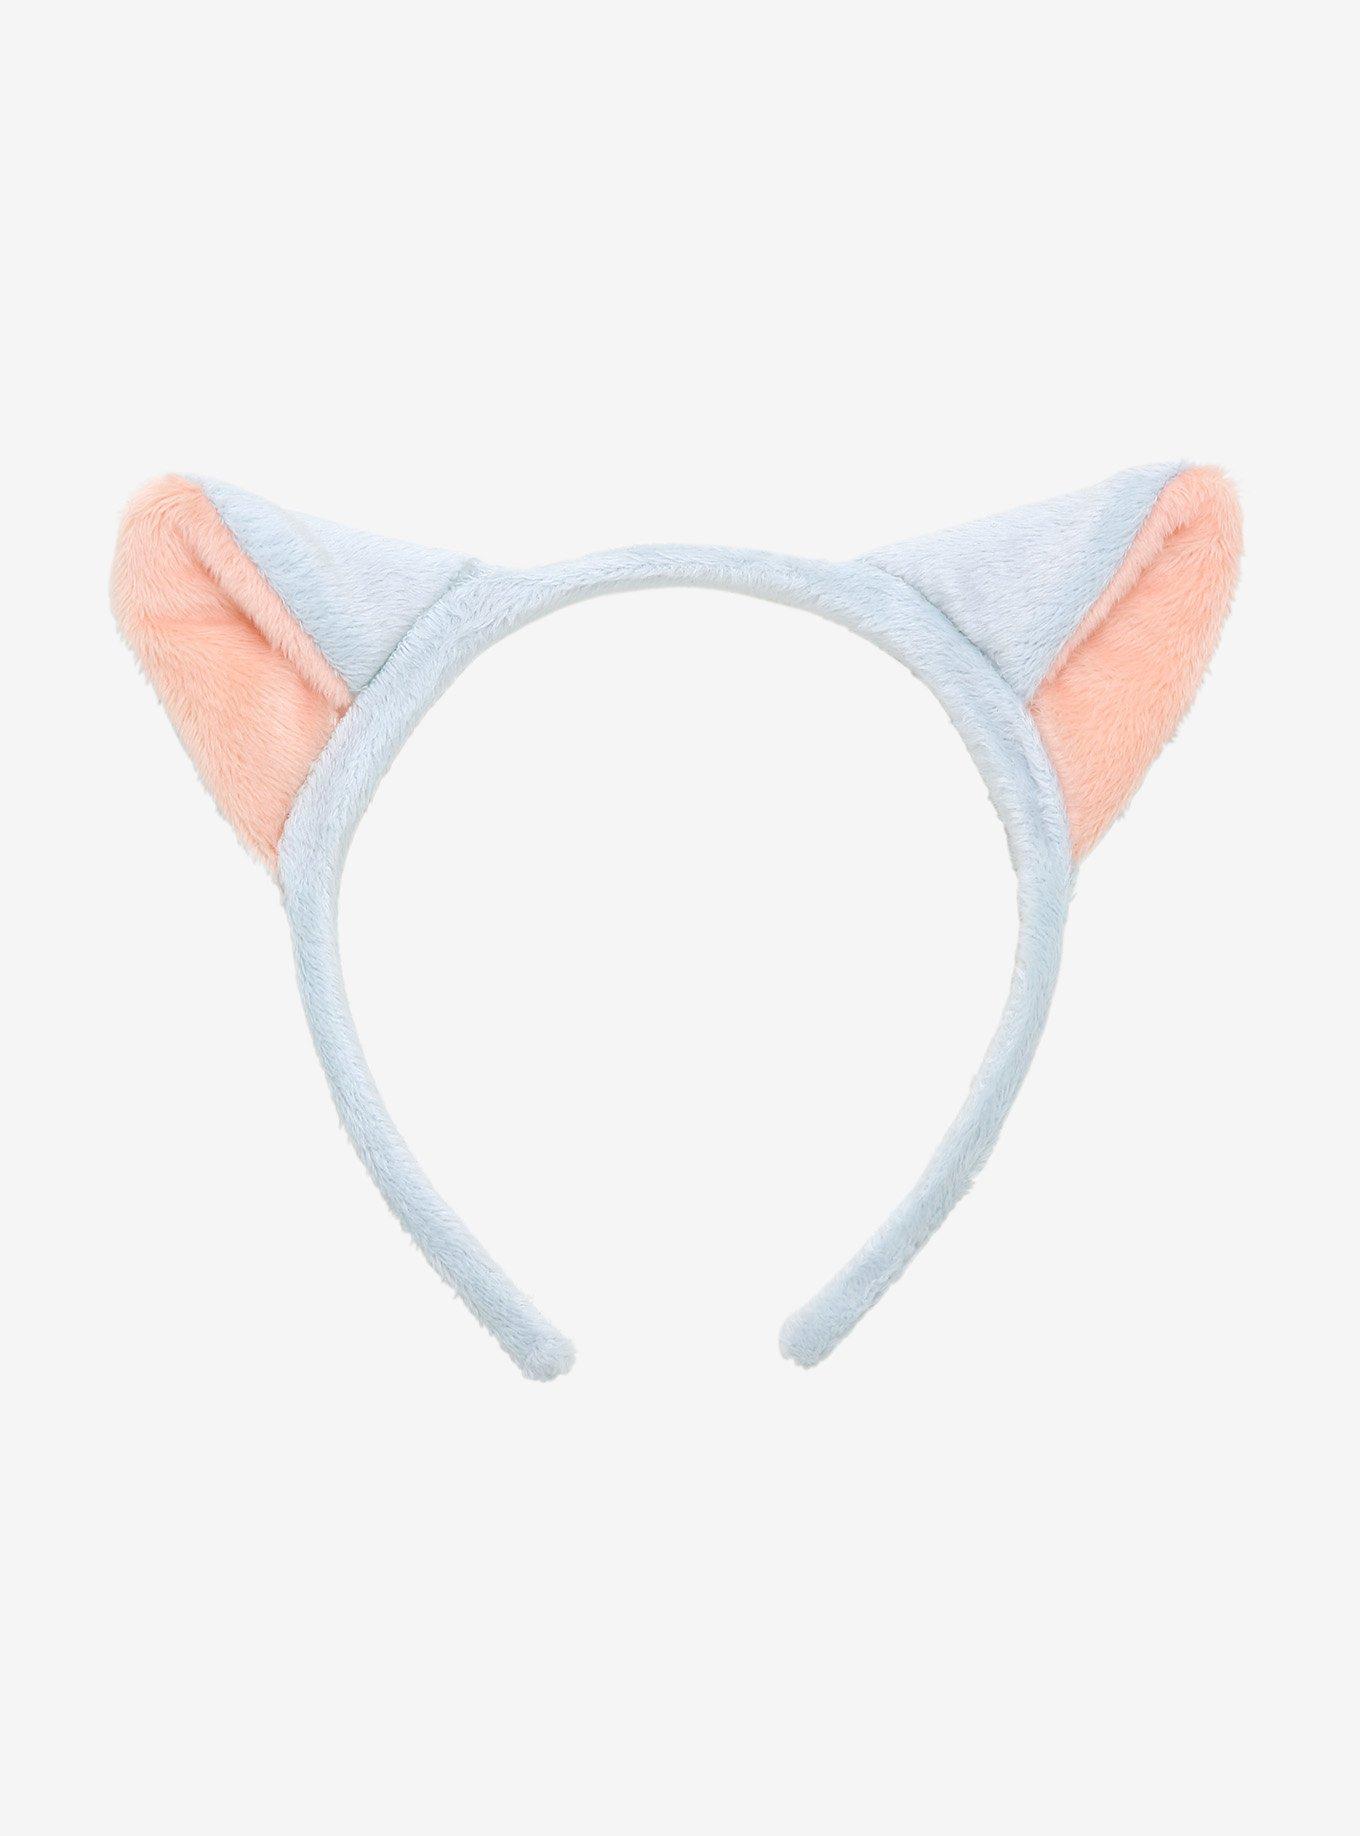 Inuyasha Ears Headband, , hi-res